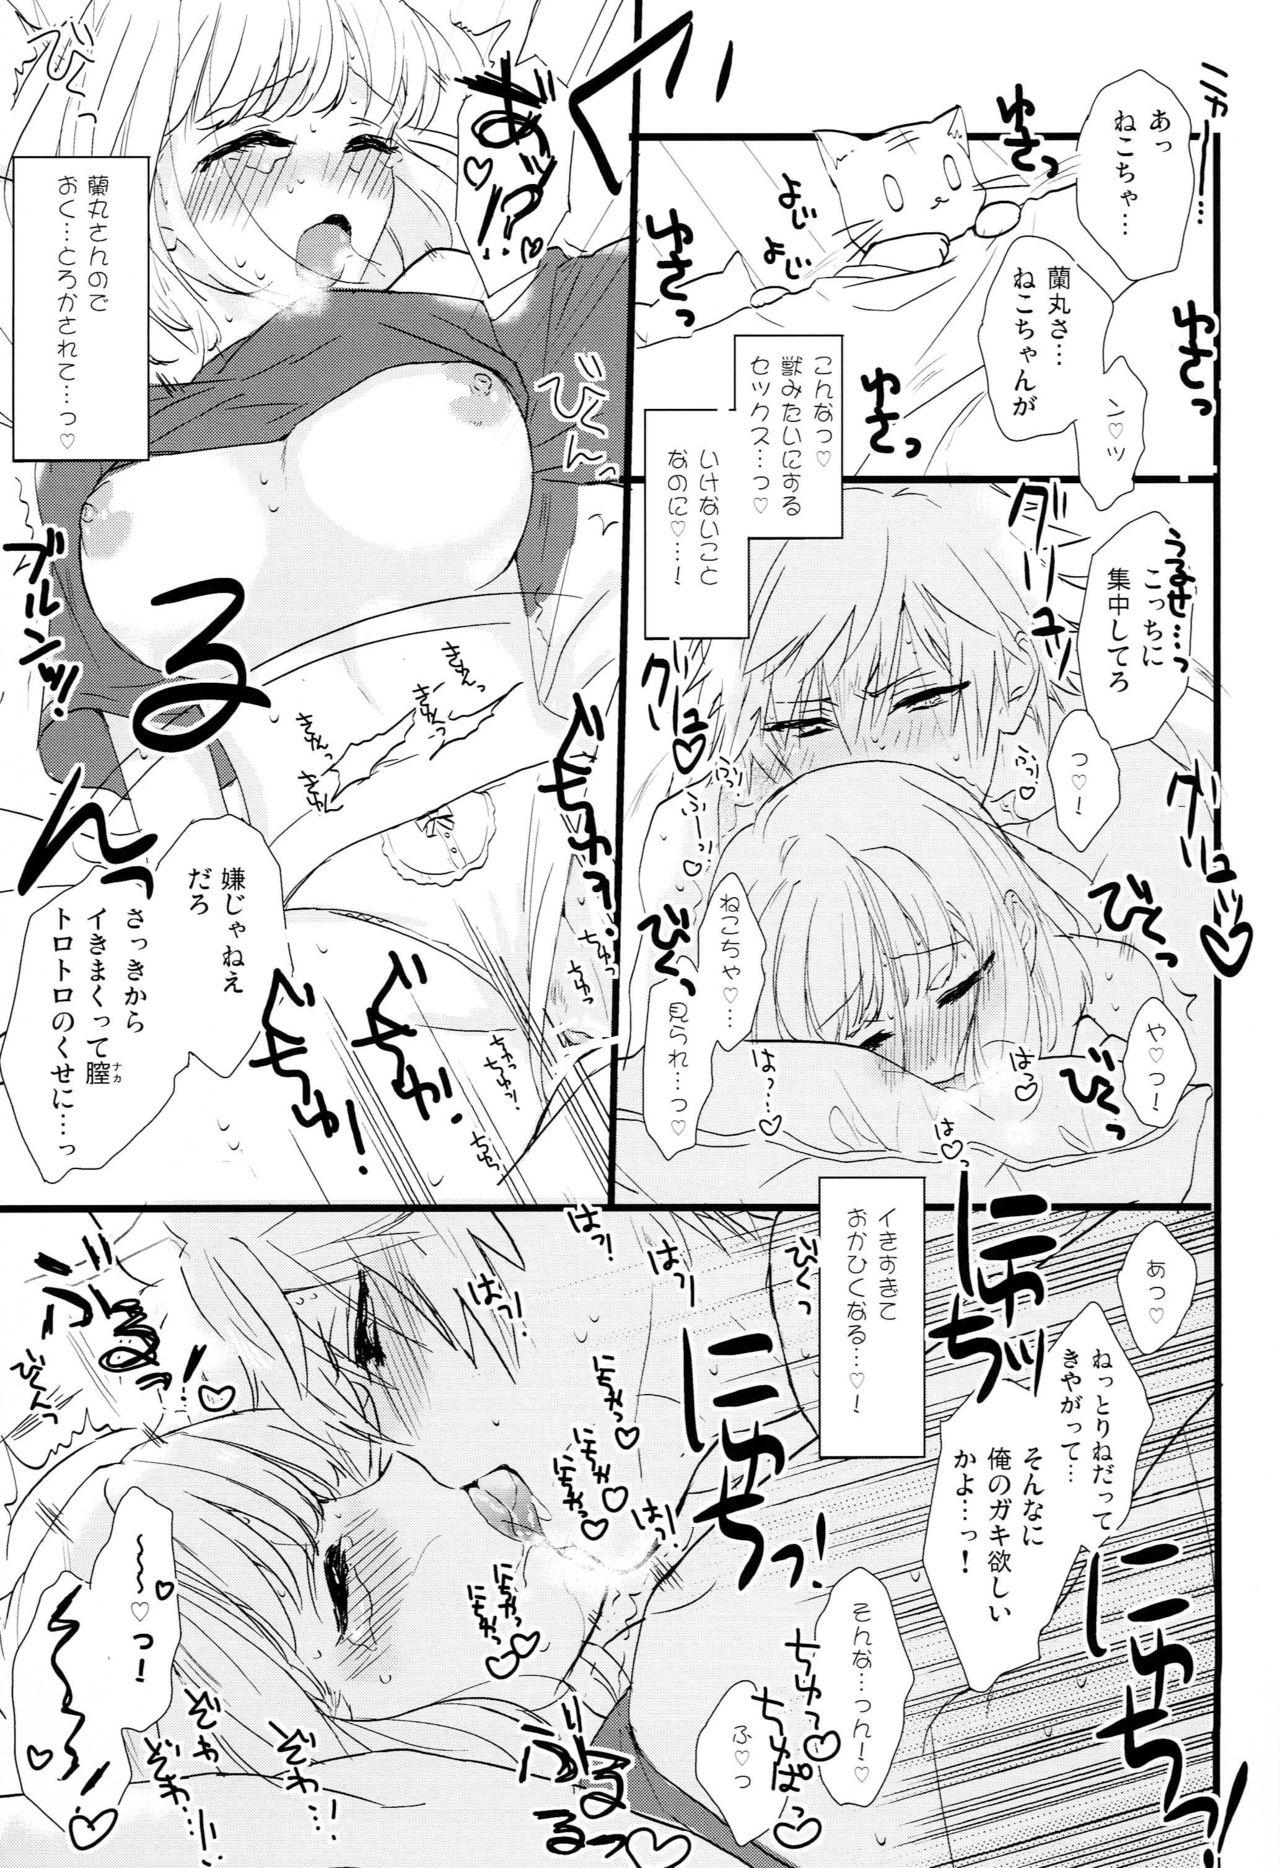 Huge ICECANDY KISS - Uta no prince sama Mas - Page 8